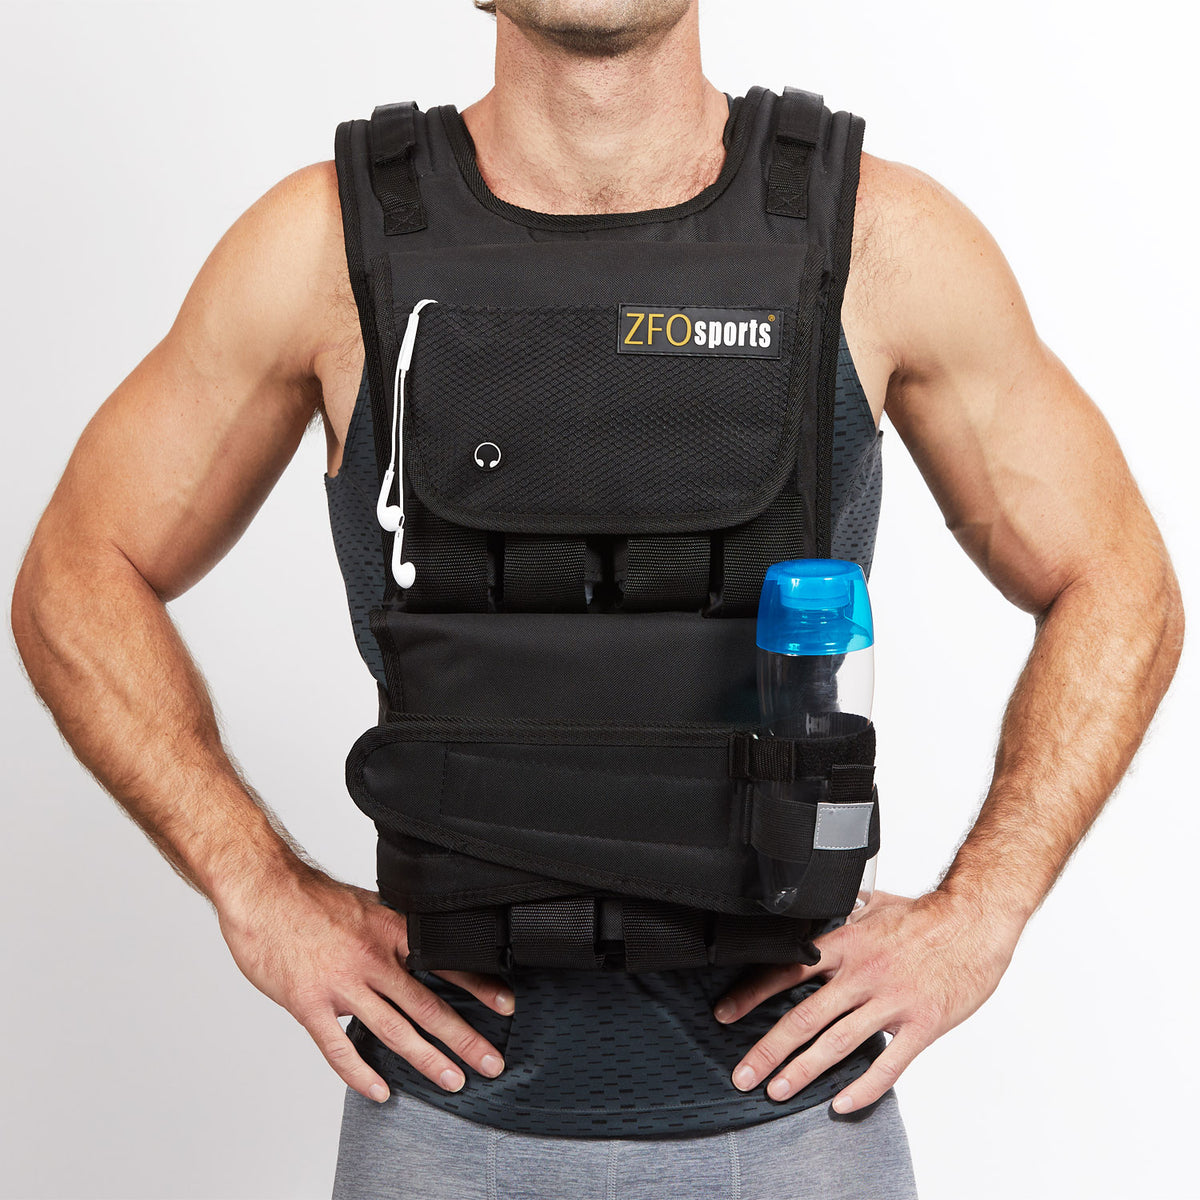  ZFOsports chaleco ajustable con pesas de 30 lb, con bolsillos  para el teléfono celular y una botella de agua. : Deportes y Actividades al  Aire Libre